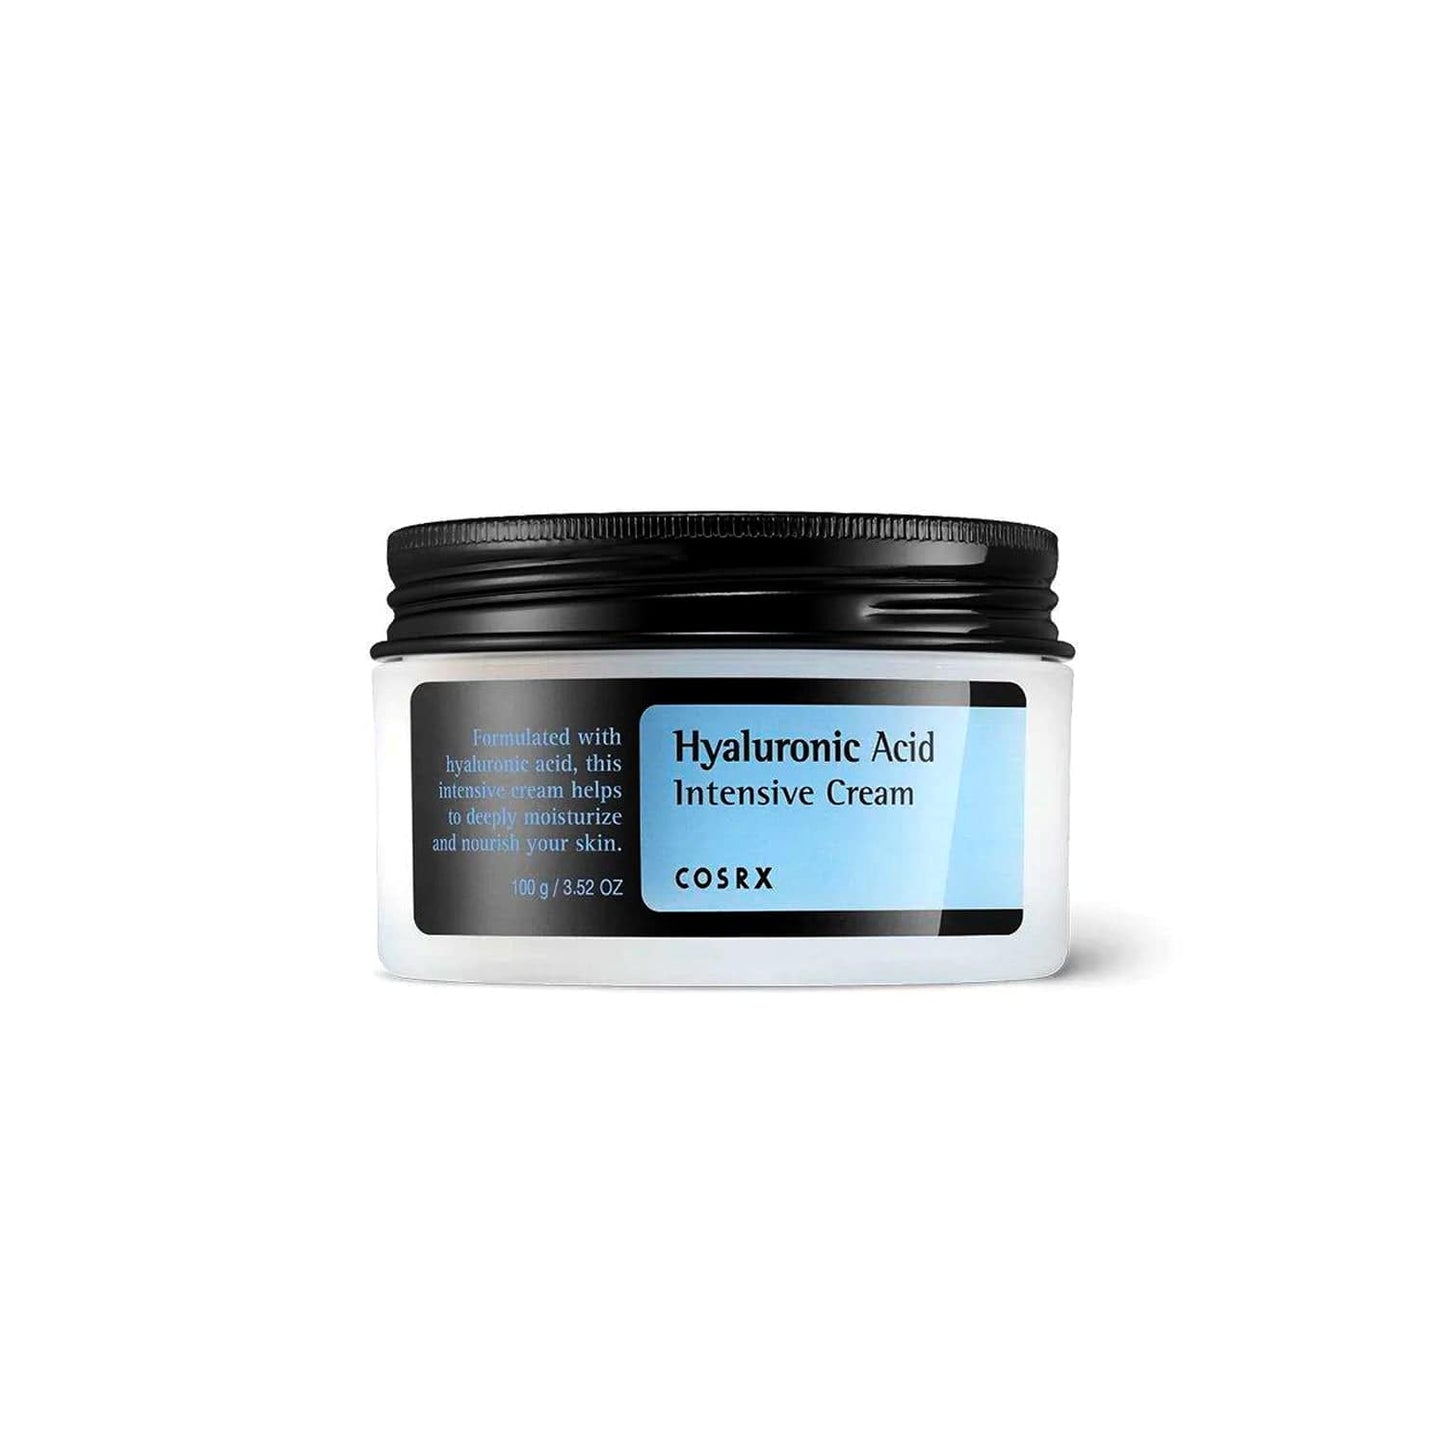 COSRX - Crème hydratante "Intensive Cream" pour visage à l'acide hyaluronique - 100ml - COSRX - Ethni Beauty Market